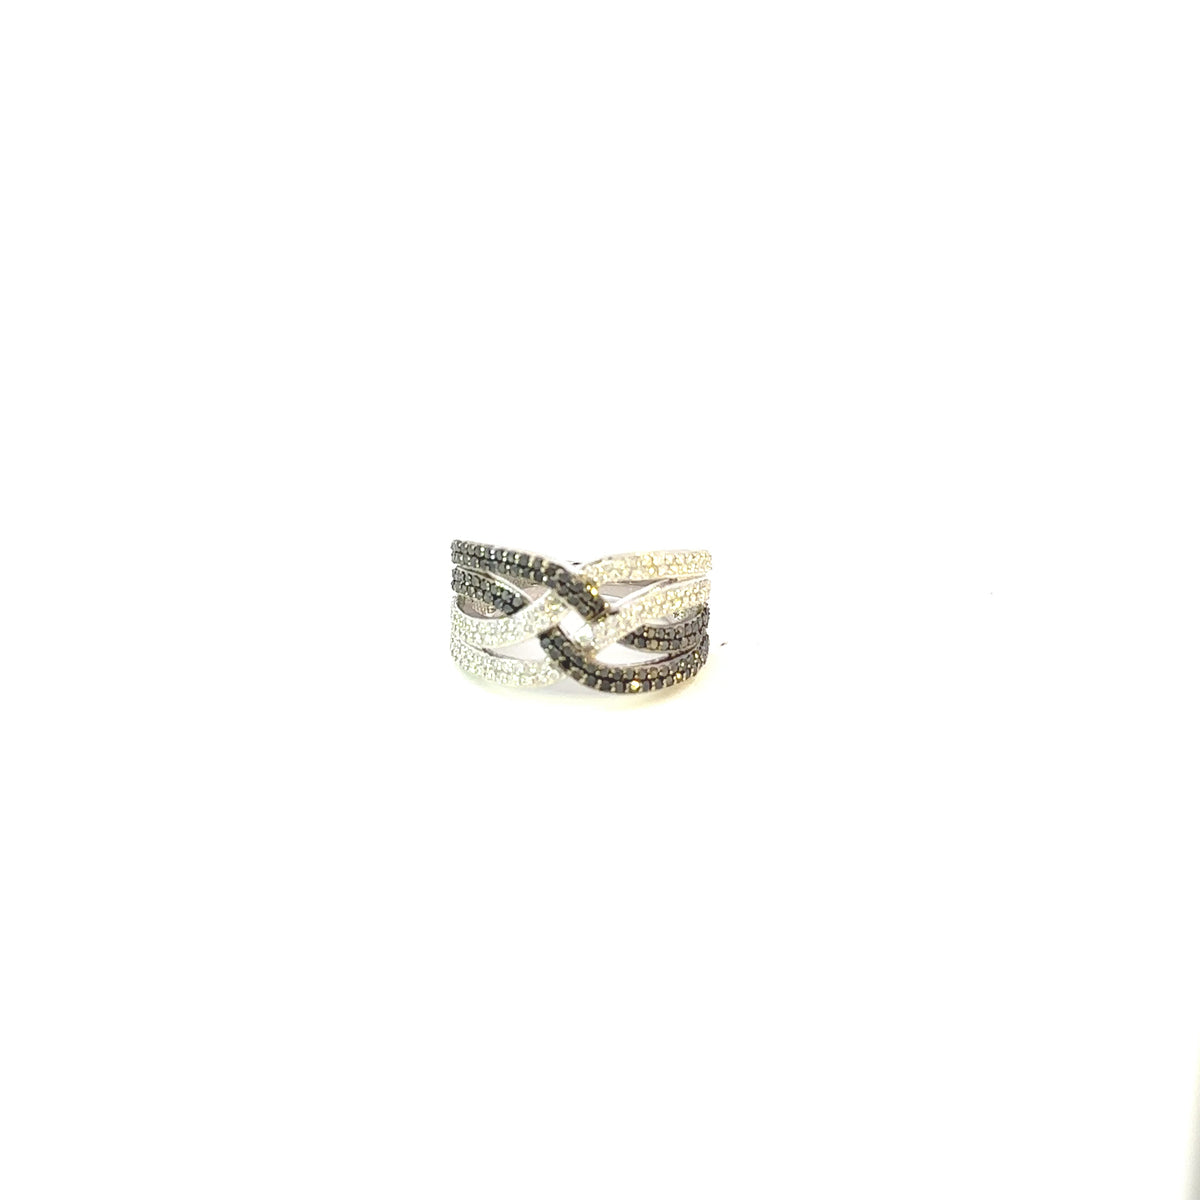 10K White Gold 0.80 cttw Black Diamond Ring